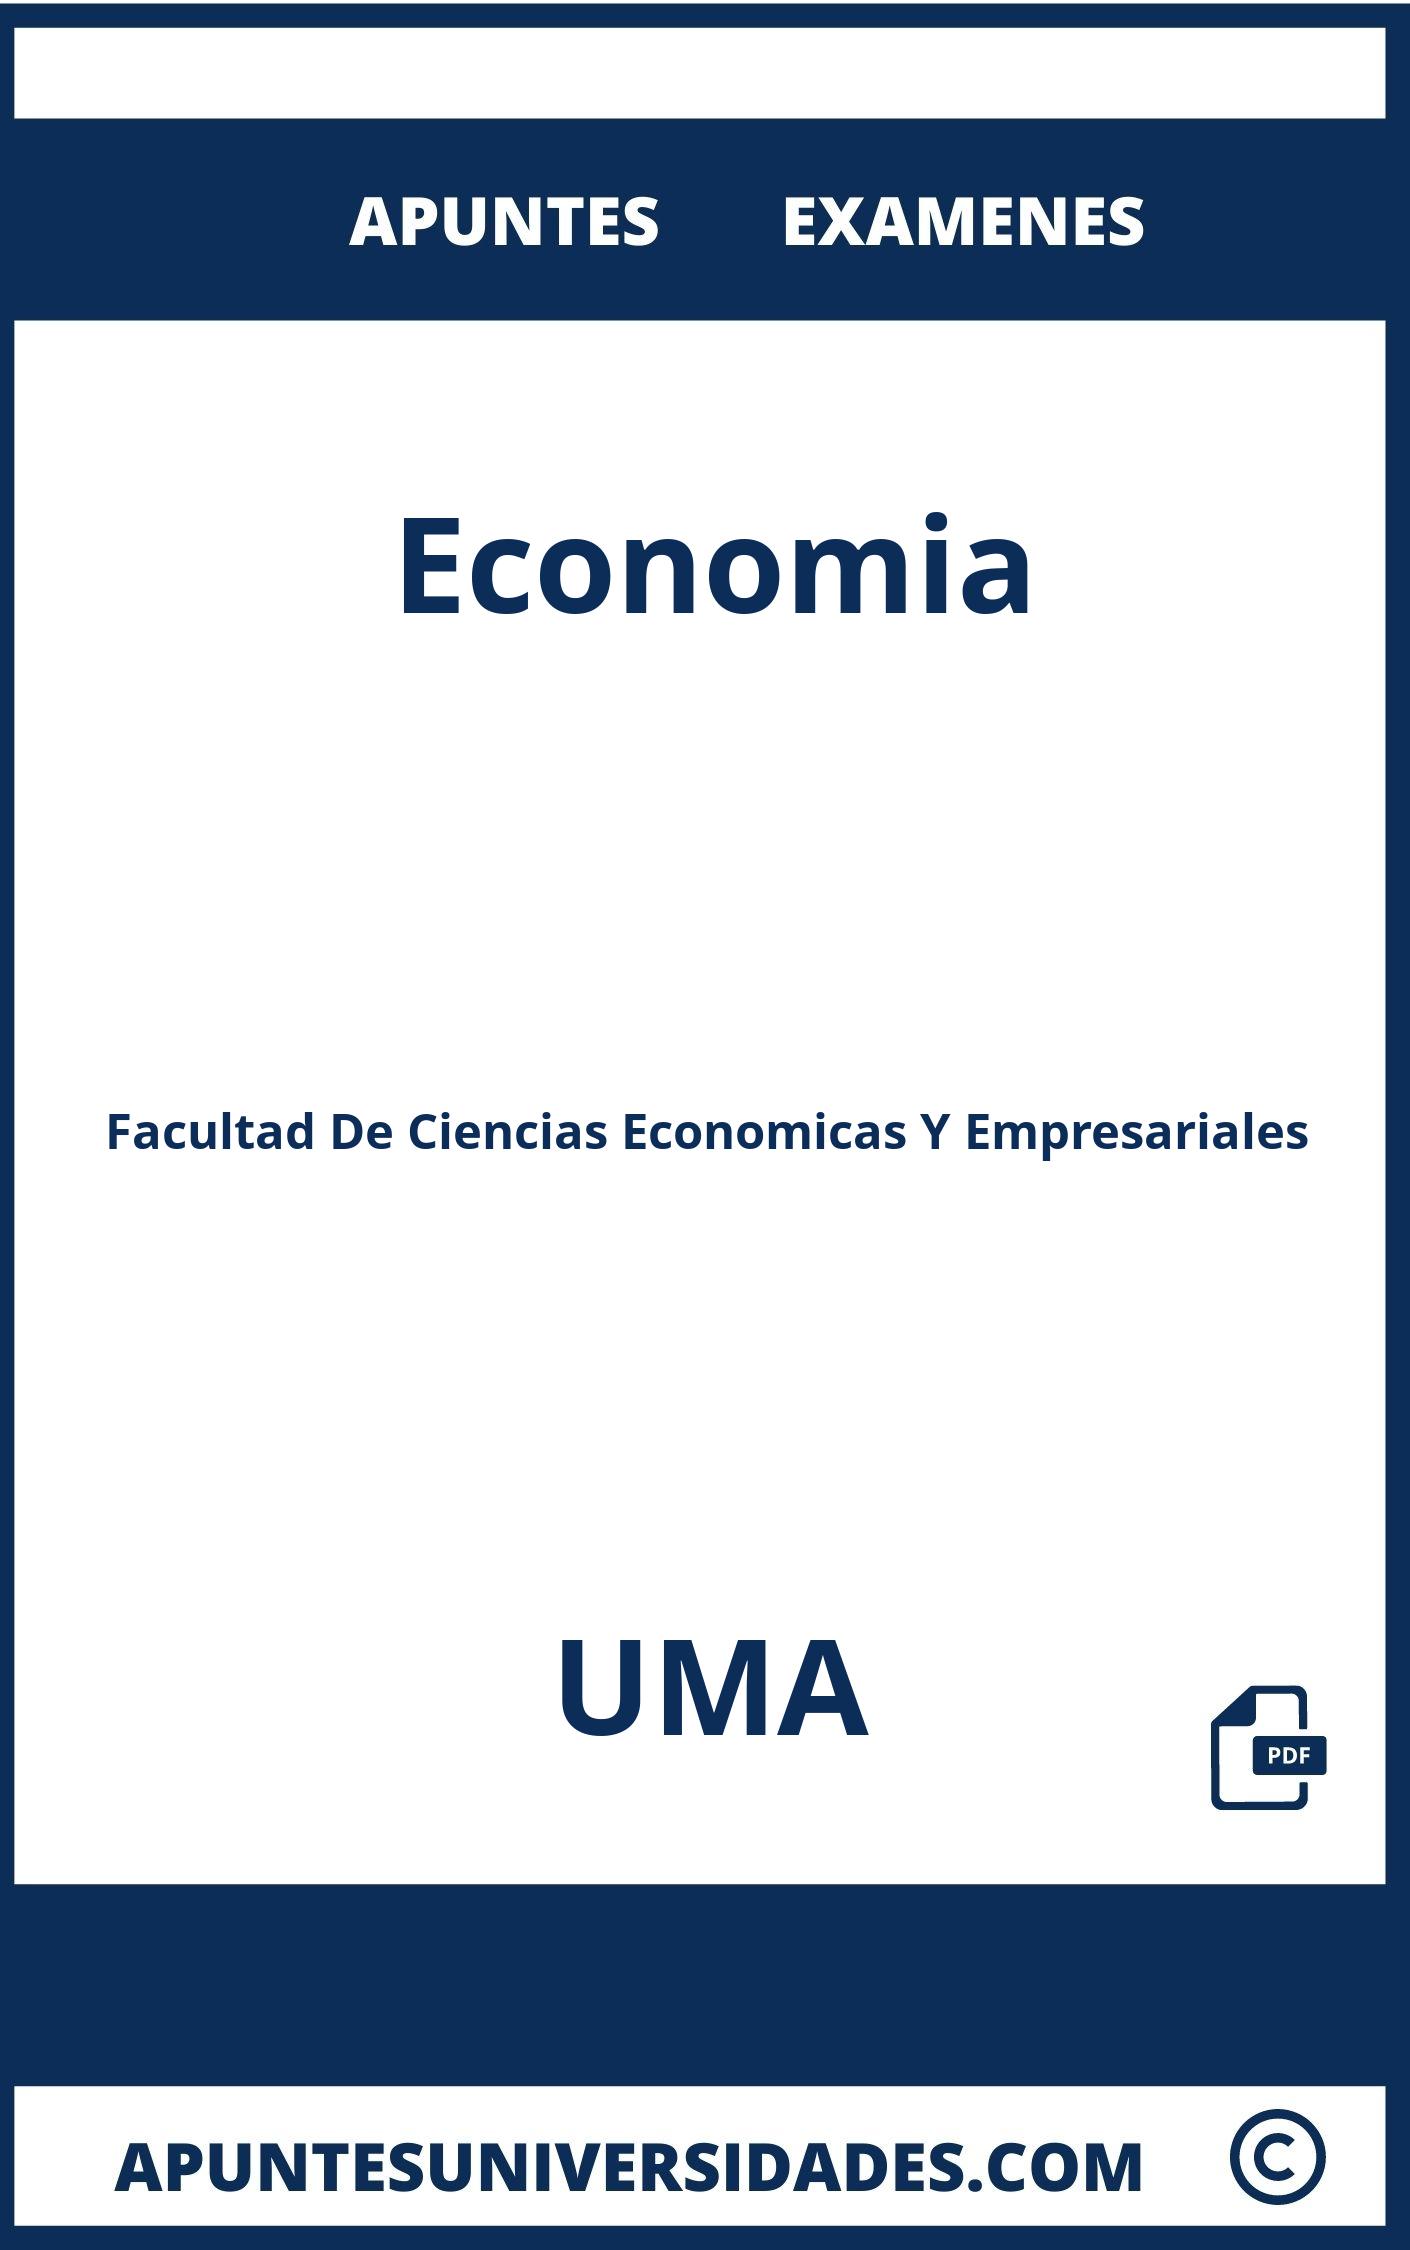 Economia UMA Examenes Apuntes